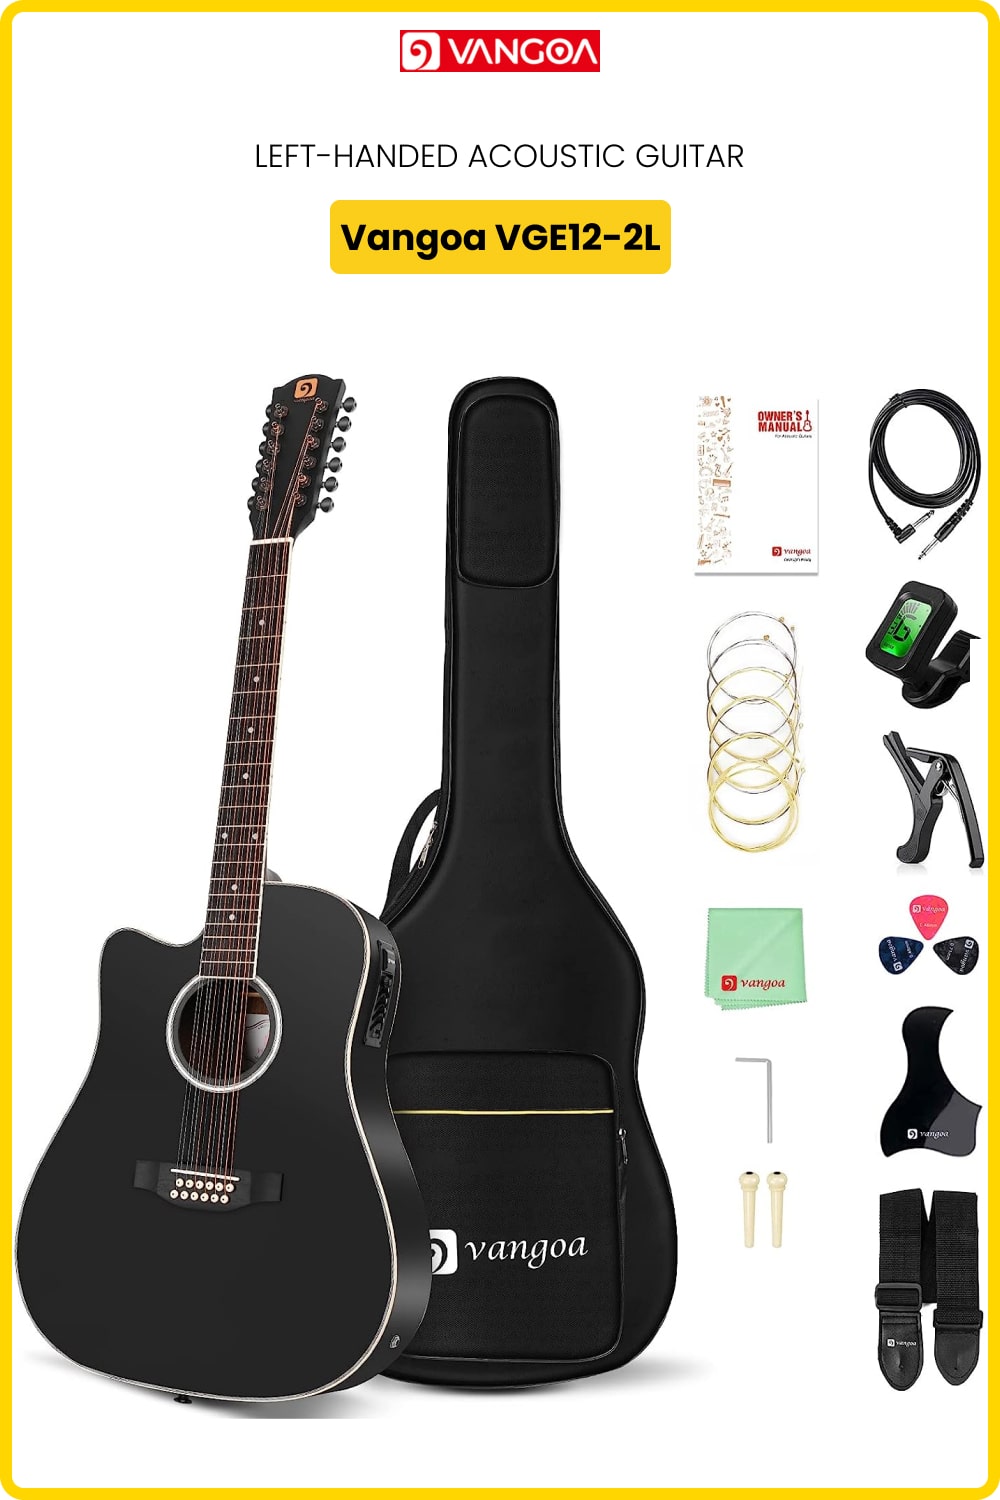 Left-Handed Vangoa VGE12-2L Acoustic 12-string Guitar Kit